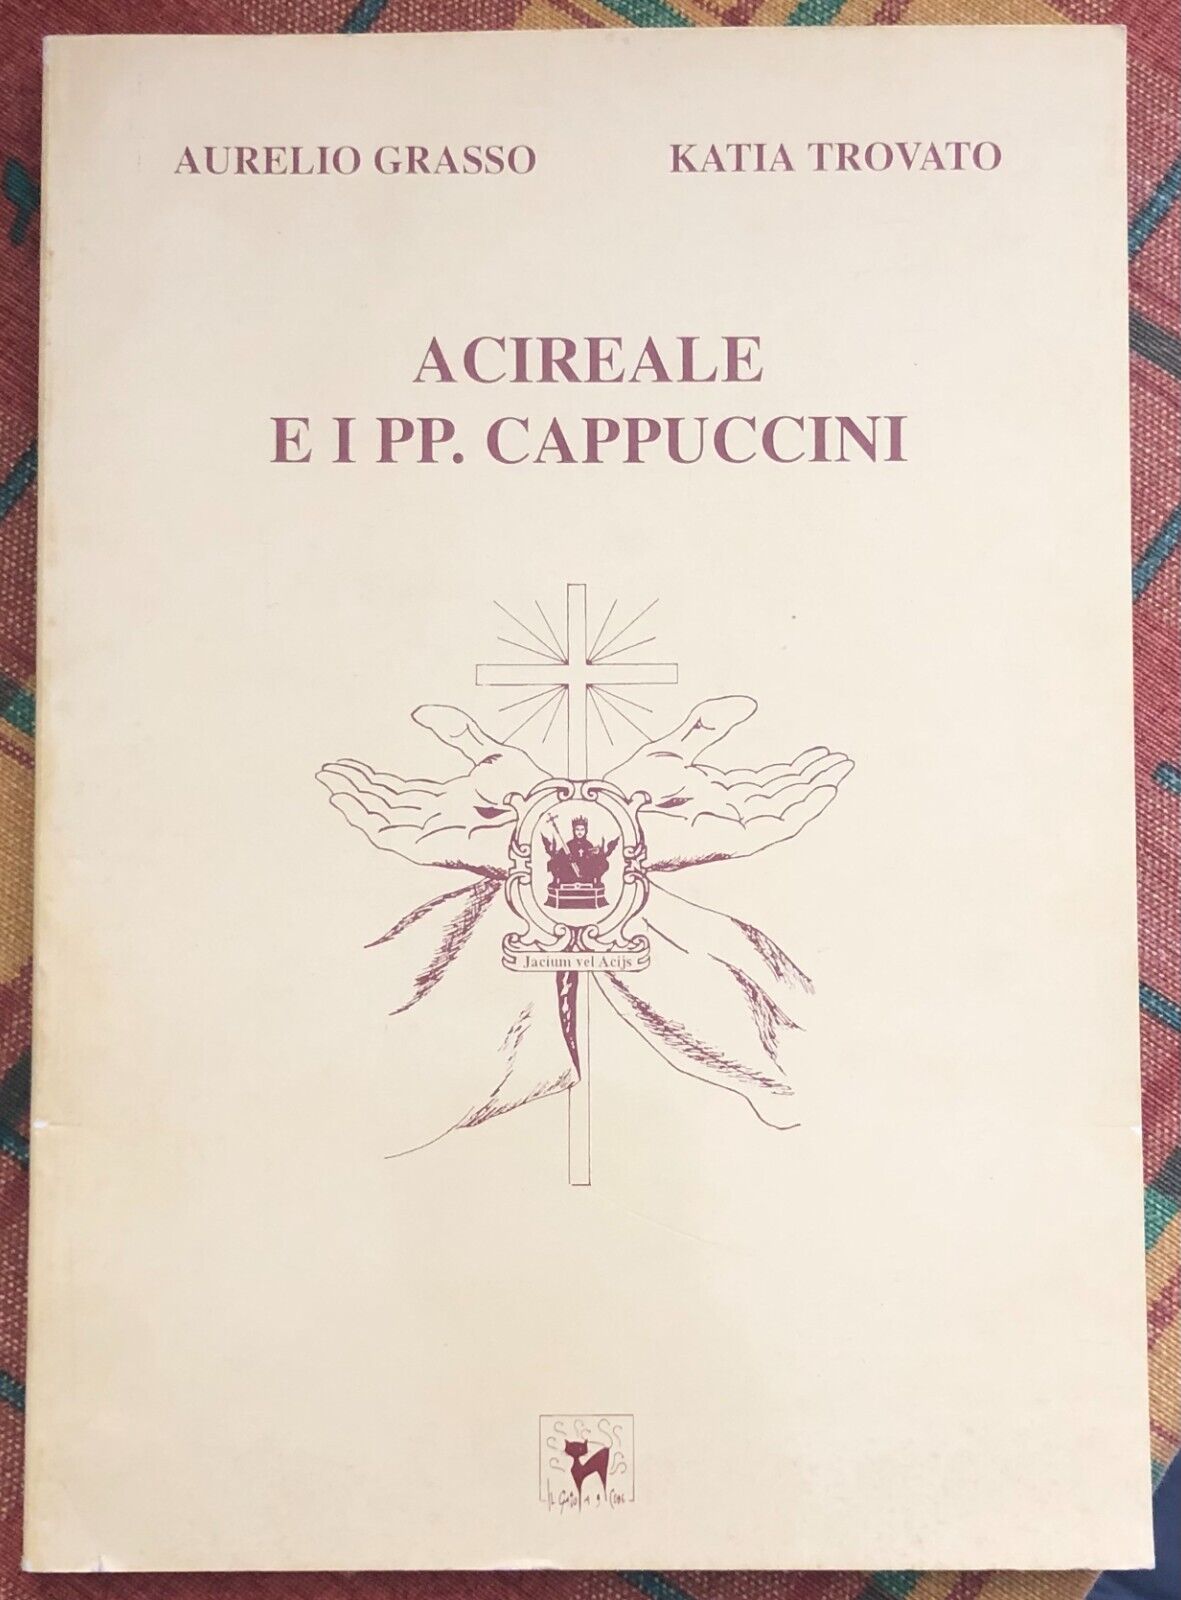 Acireale e i PP. Cappuccini di Aurelio Grasso, Katia Trovato, 1994, Il Gatto 